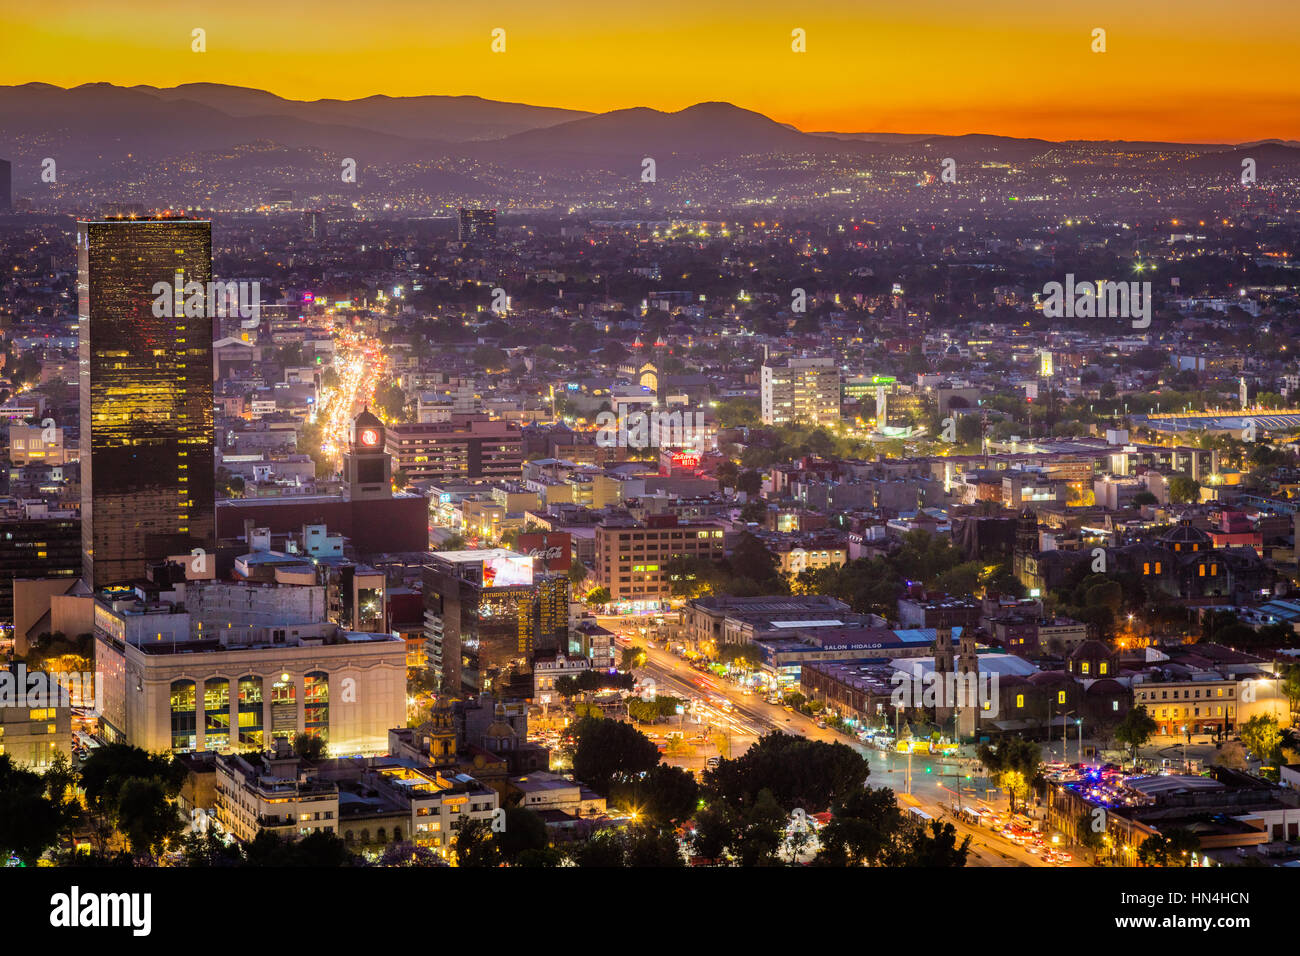 Vista de la Ciudad de México desde la Torre Latinoamericana. Ciudad de México es la densamente poblada de gran altitud, la capital de México. Foto de stock